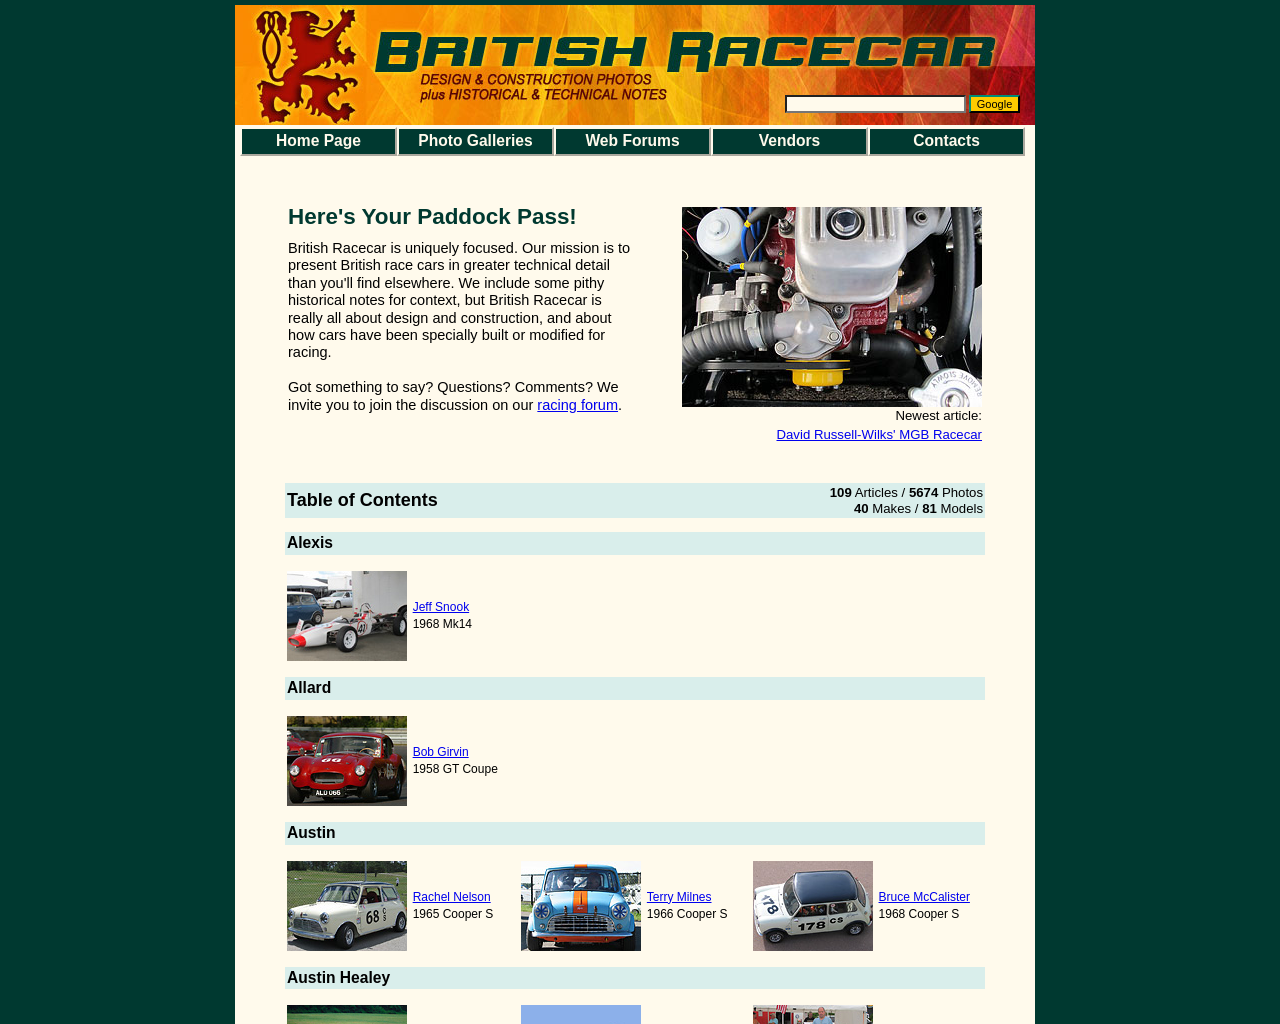 britishracecar.com